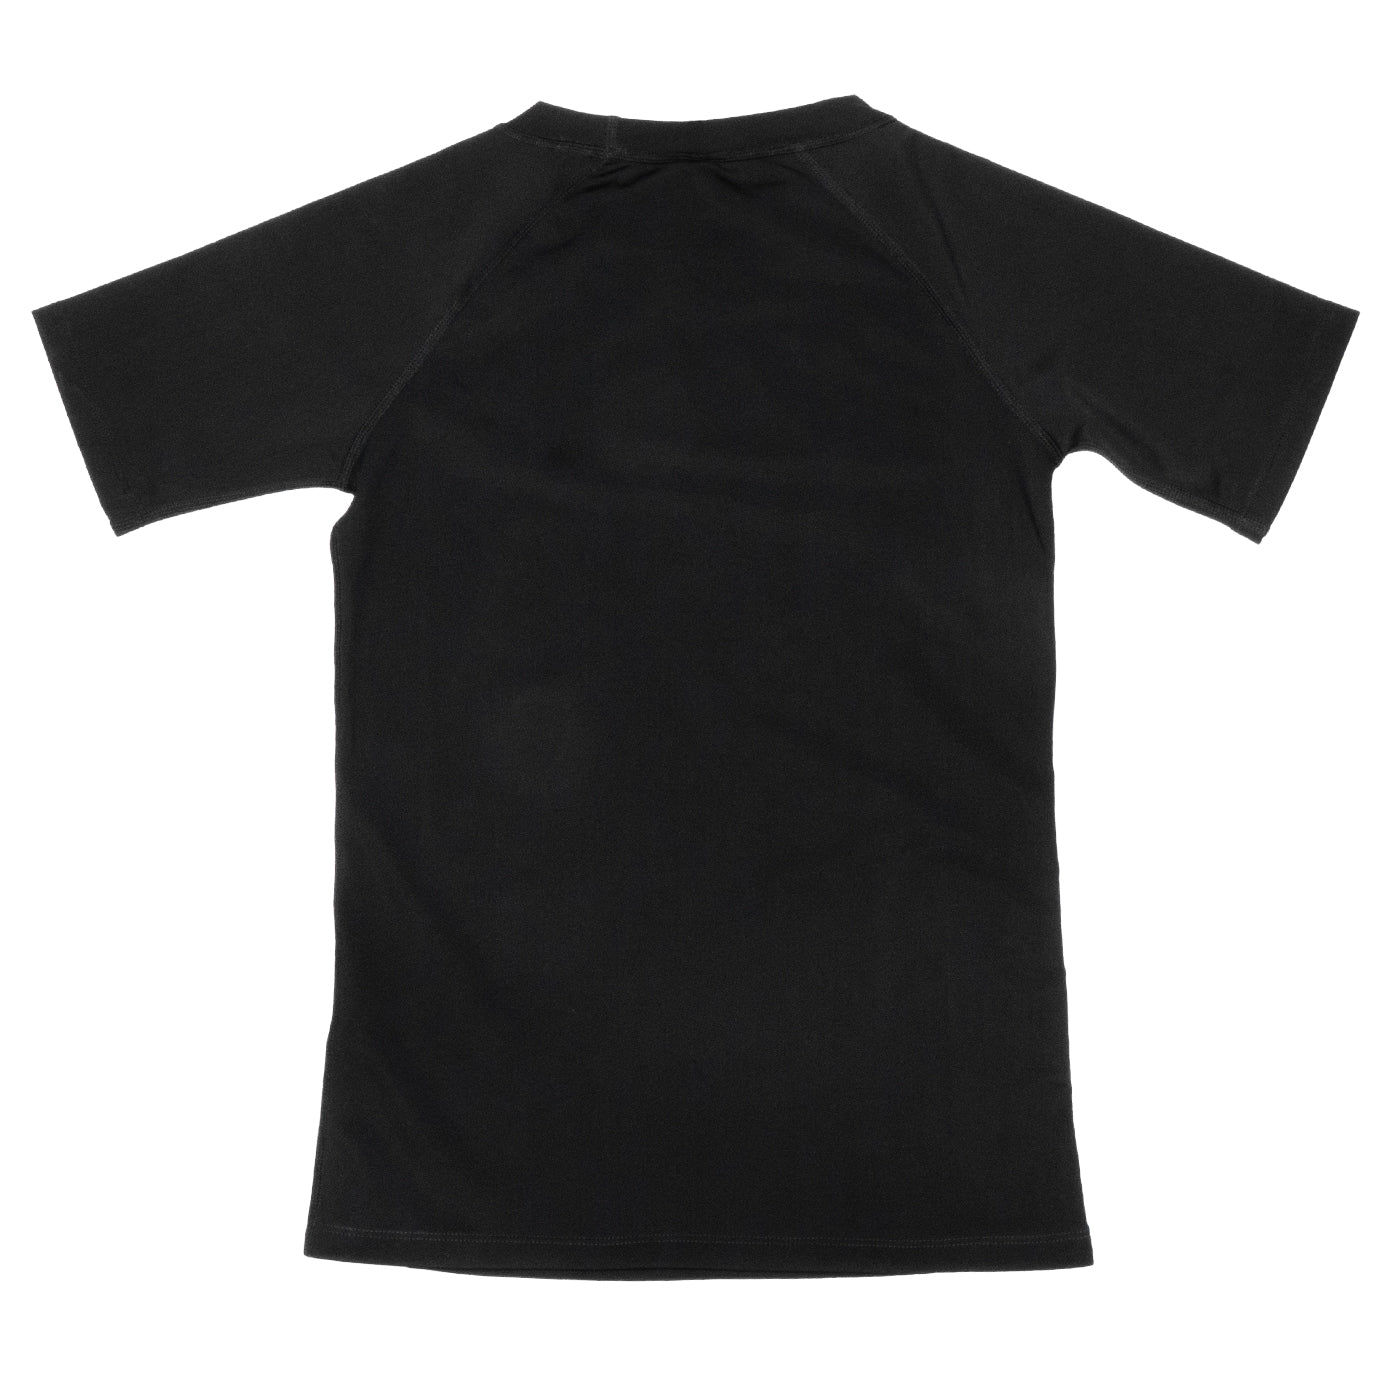 Kids Rashguard Sun Protectant T-Shirt - Black/Green